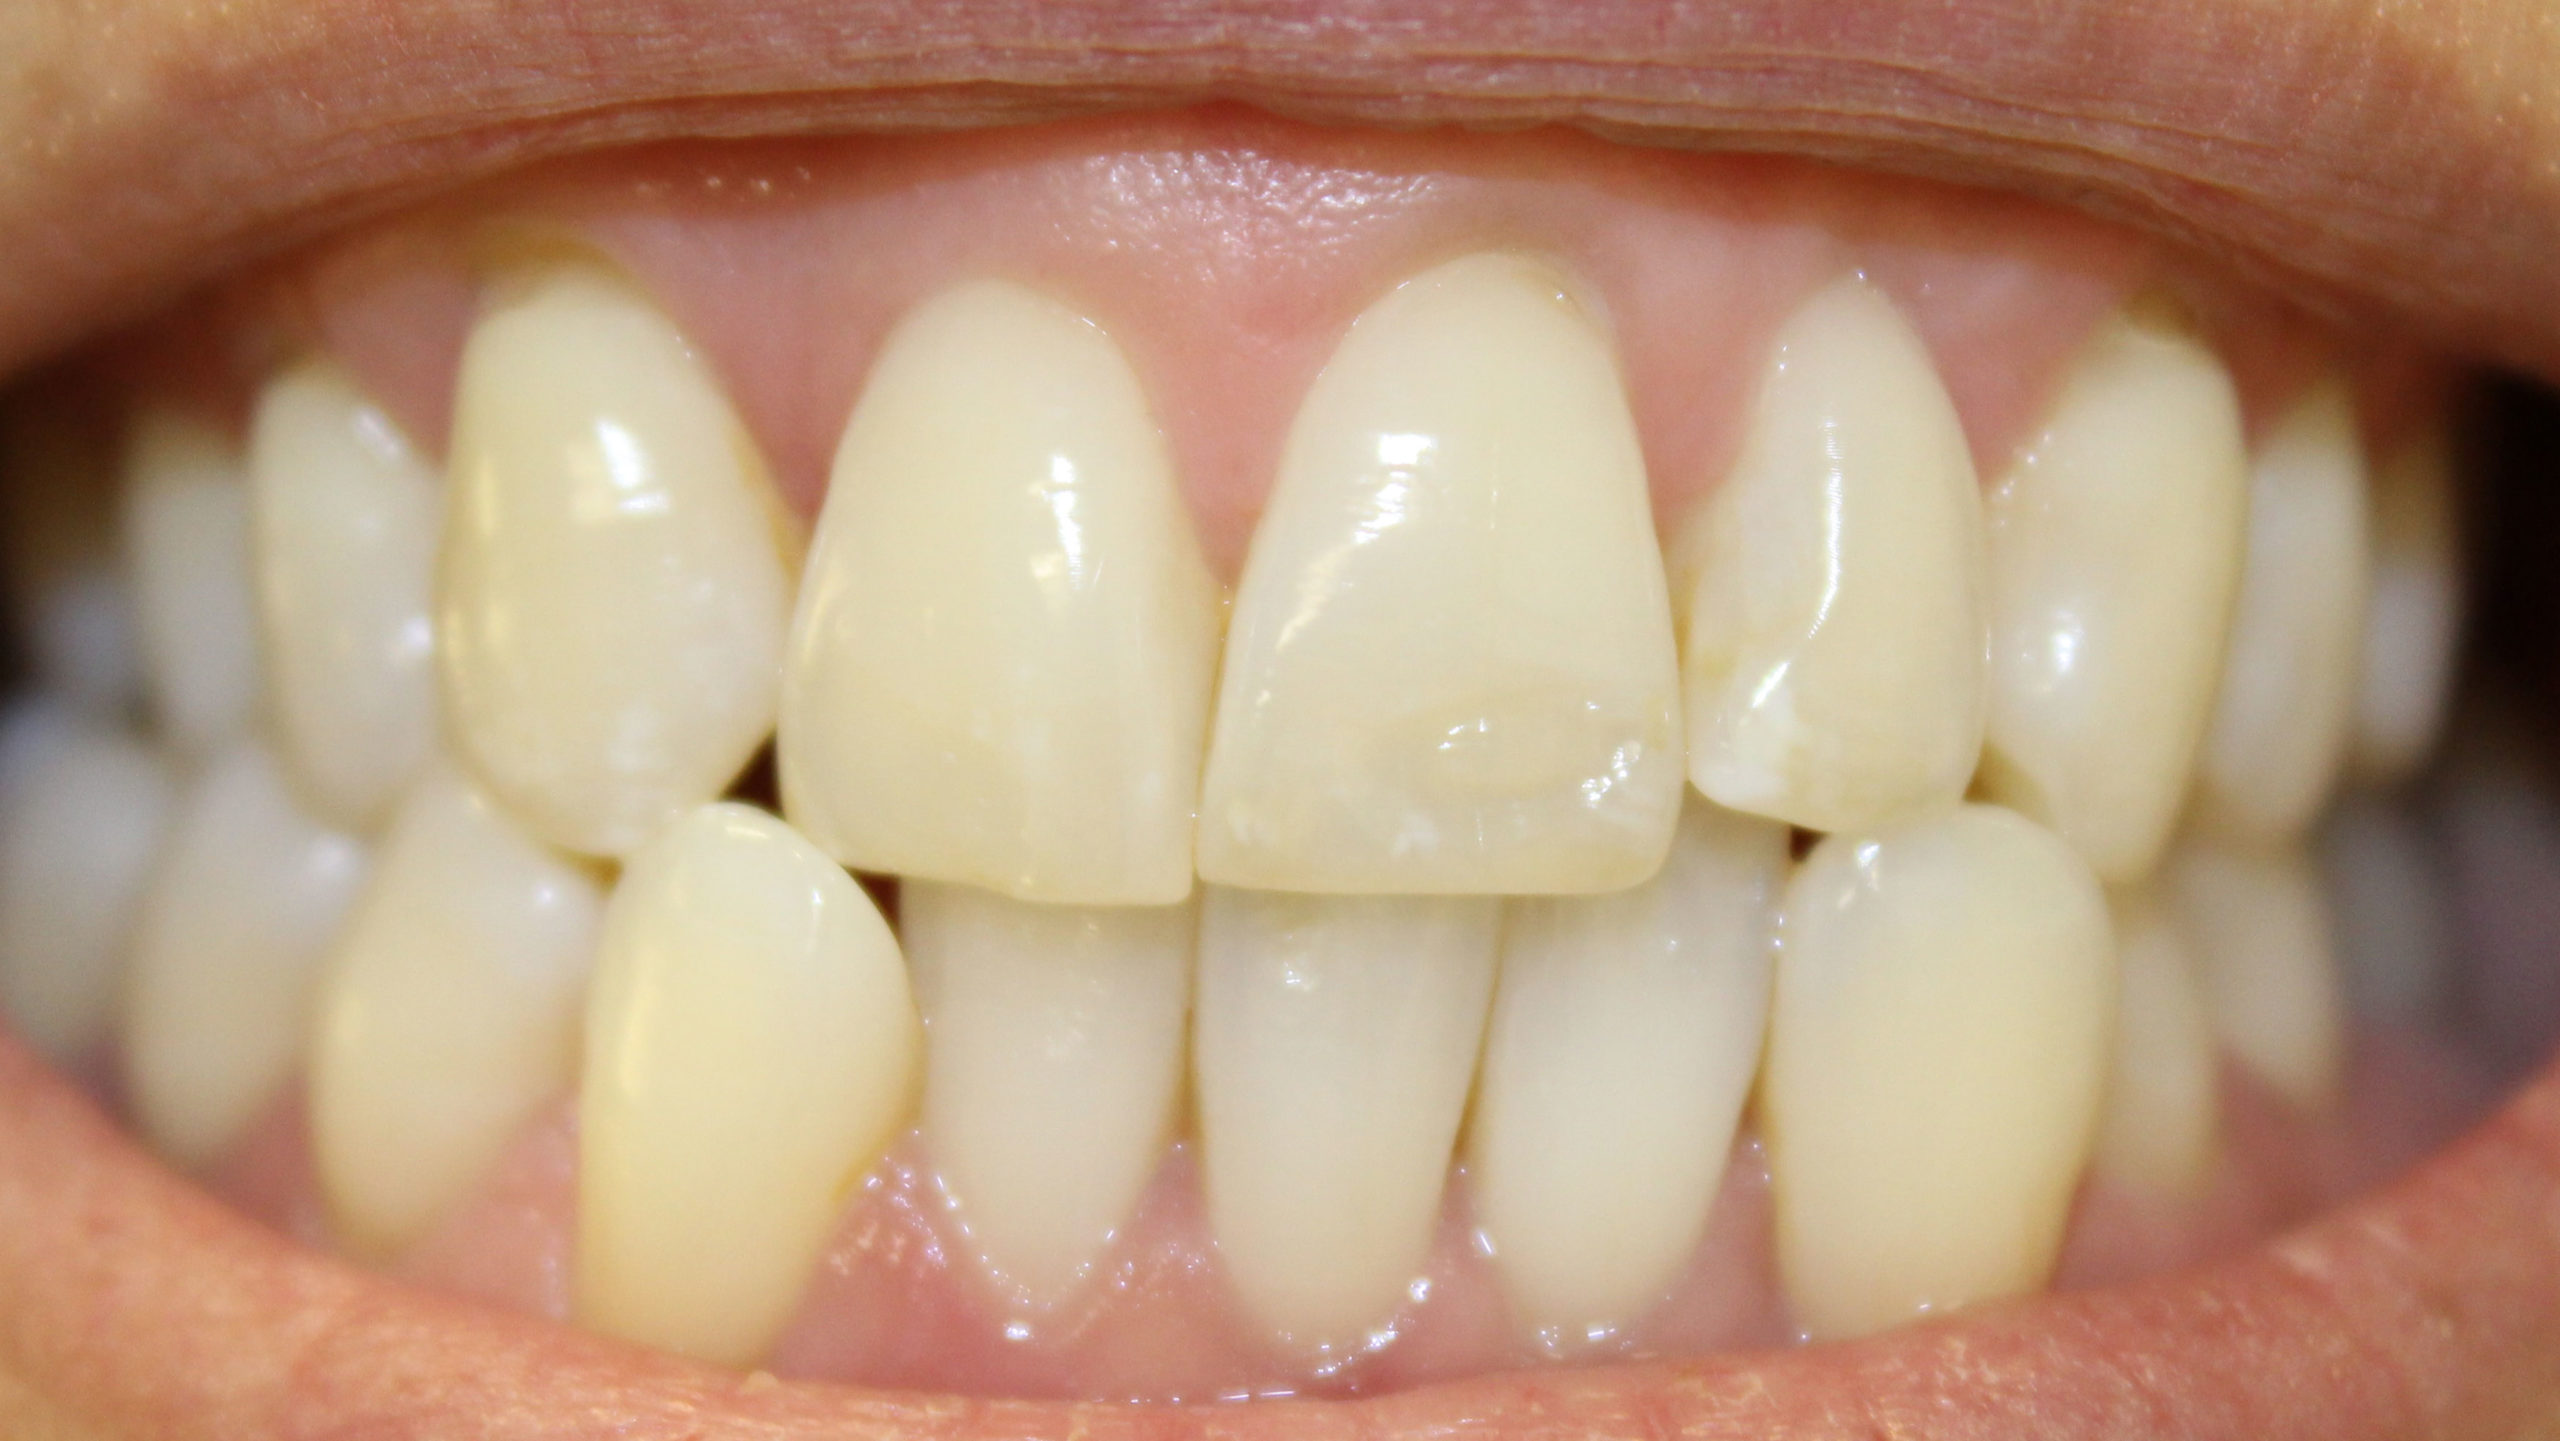 Before invisalign, teethwhitening & composite bonding